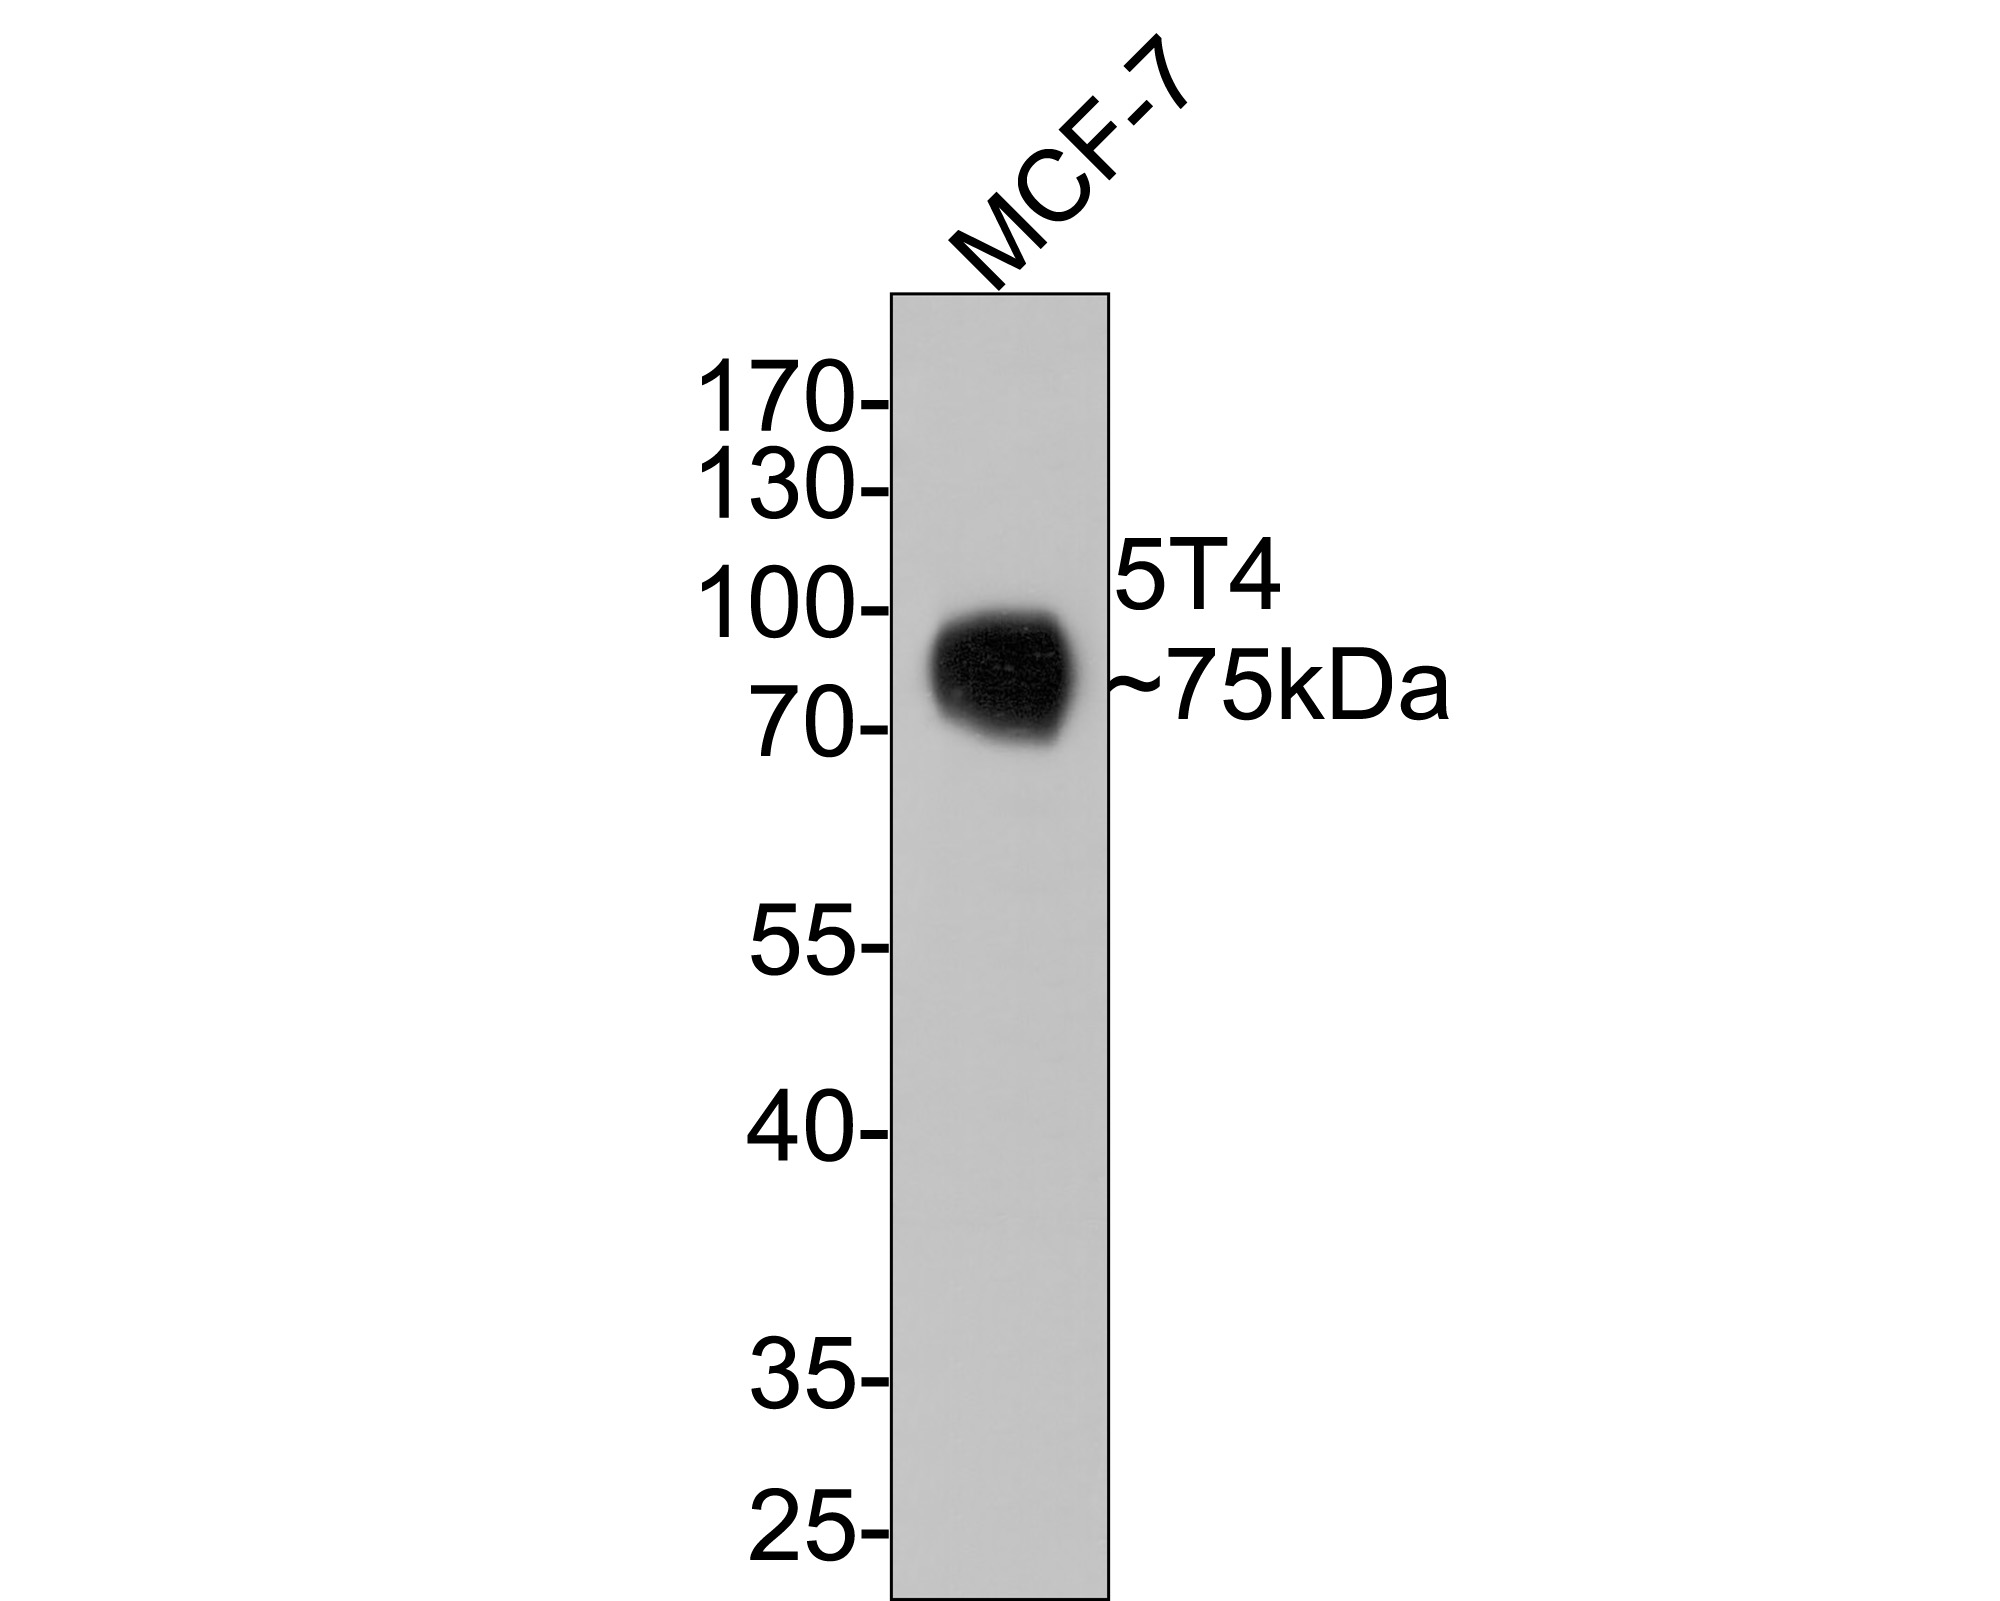 MCF-7 hücre lizatları üzerinde 5T4'ün Western blot analizi.  Proteinler bir PVDF membranına aktarıldı ve oda sıcaklığında 1 saat boyunca PBS içinde %5 BSA ile bloke edildi.  Primer antikor (ET1608-37, 1/500), oda sıcaklığında 2 saat boyunca %5 BSA içinde kullanıldı.  Keçi Anti-Rabbit IgG - HRP Sekonder Antikoru (HA1001) 1:5,000 seyreltmede oda sıcaklığında 1 saat kullanıldı.